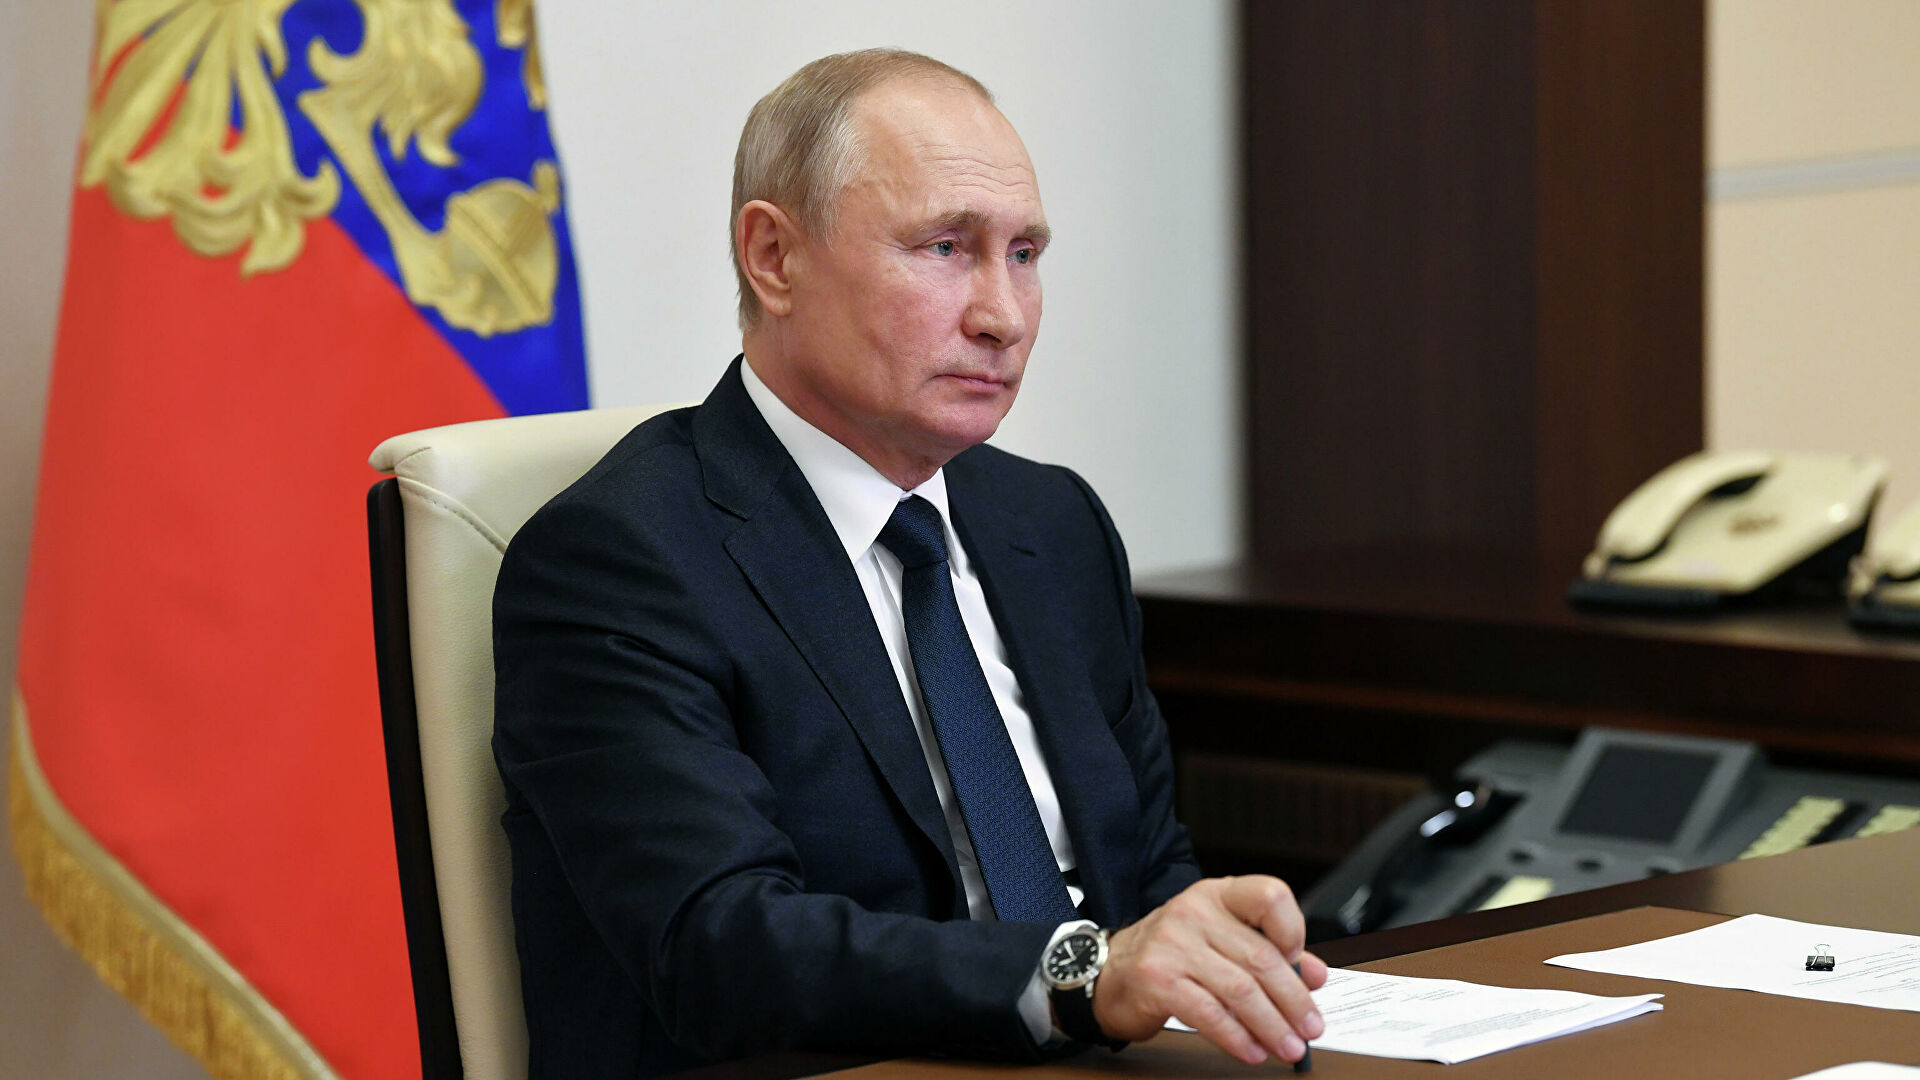 Пресс-секретарь Песков заявил, что Путин примет меры для обеспечения безопасности России - фото 1